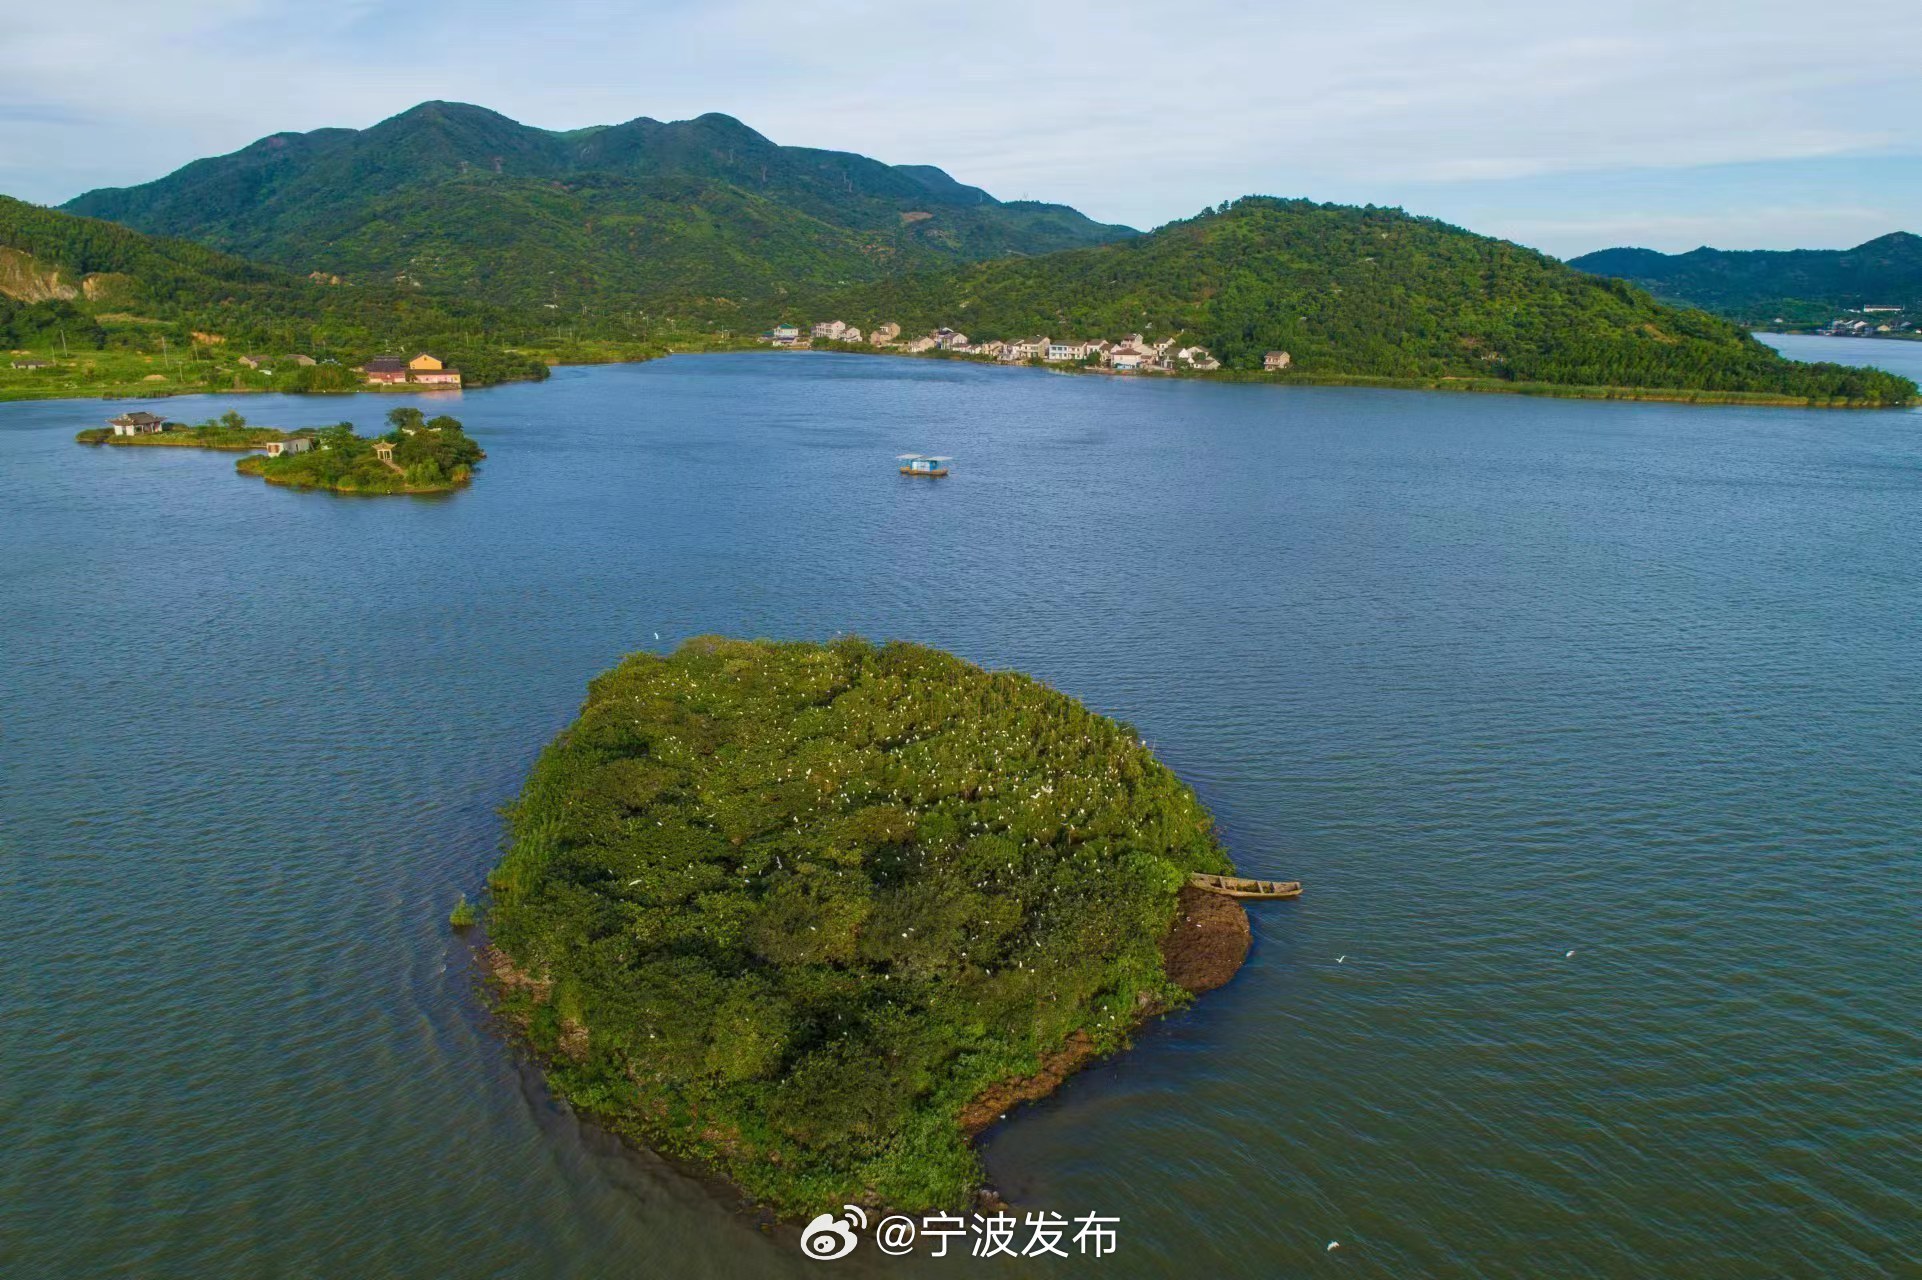 今天傍晚,宁波发布特约摄影师成文波用镜头拍下了慈溪杜湖,这里的风景